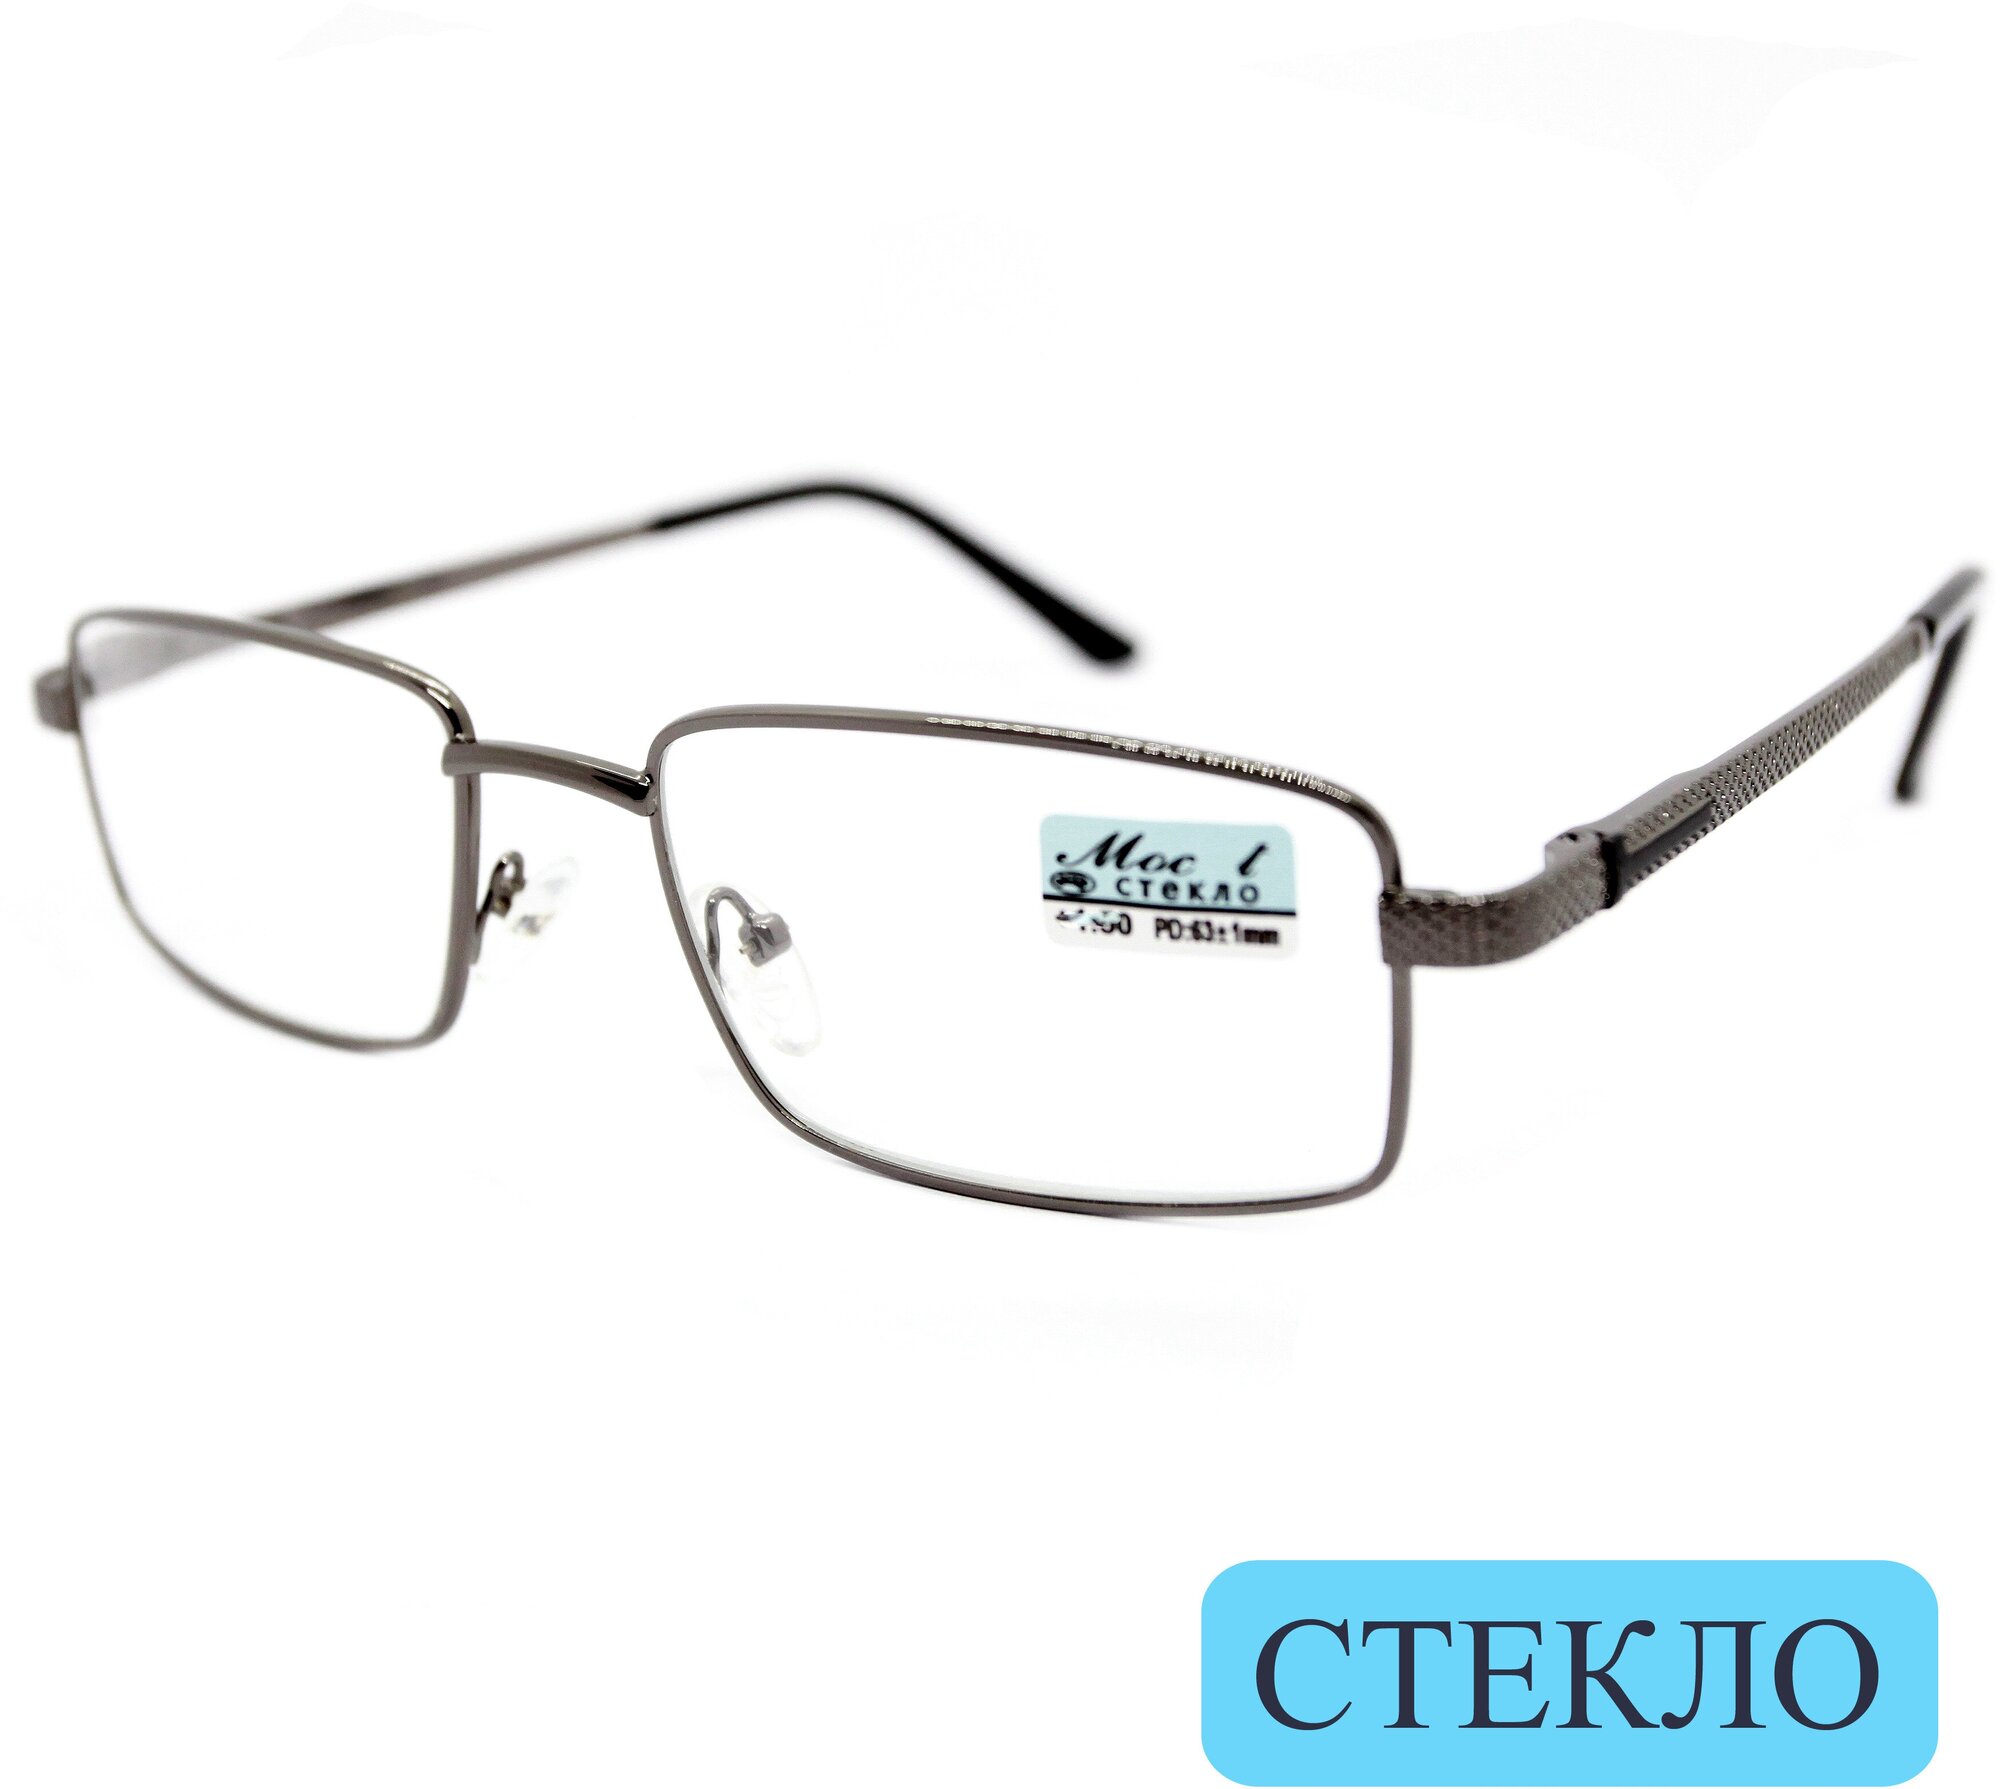 Корригирующие очки для чтения (+3.25) мост 129 M2, линза стекло, без футляра, цвет серый, РЦ 62-64